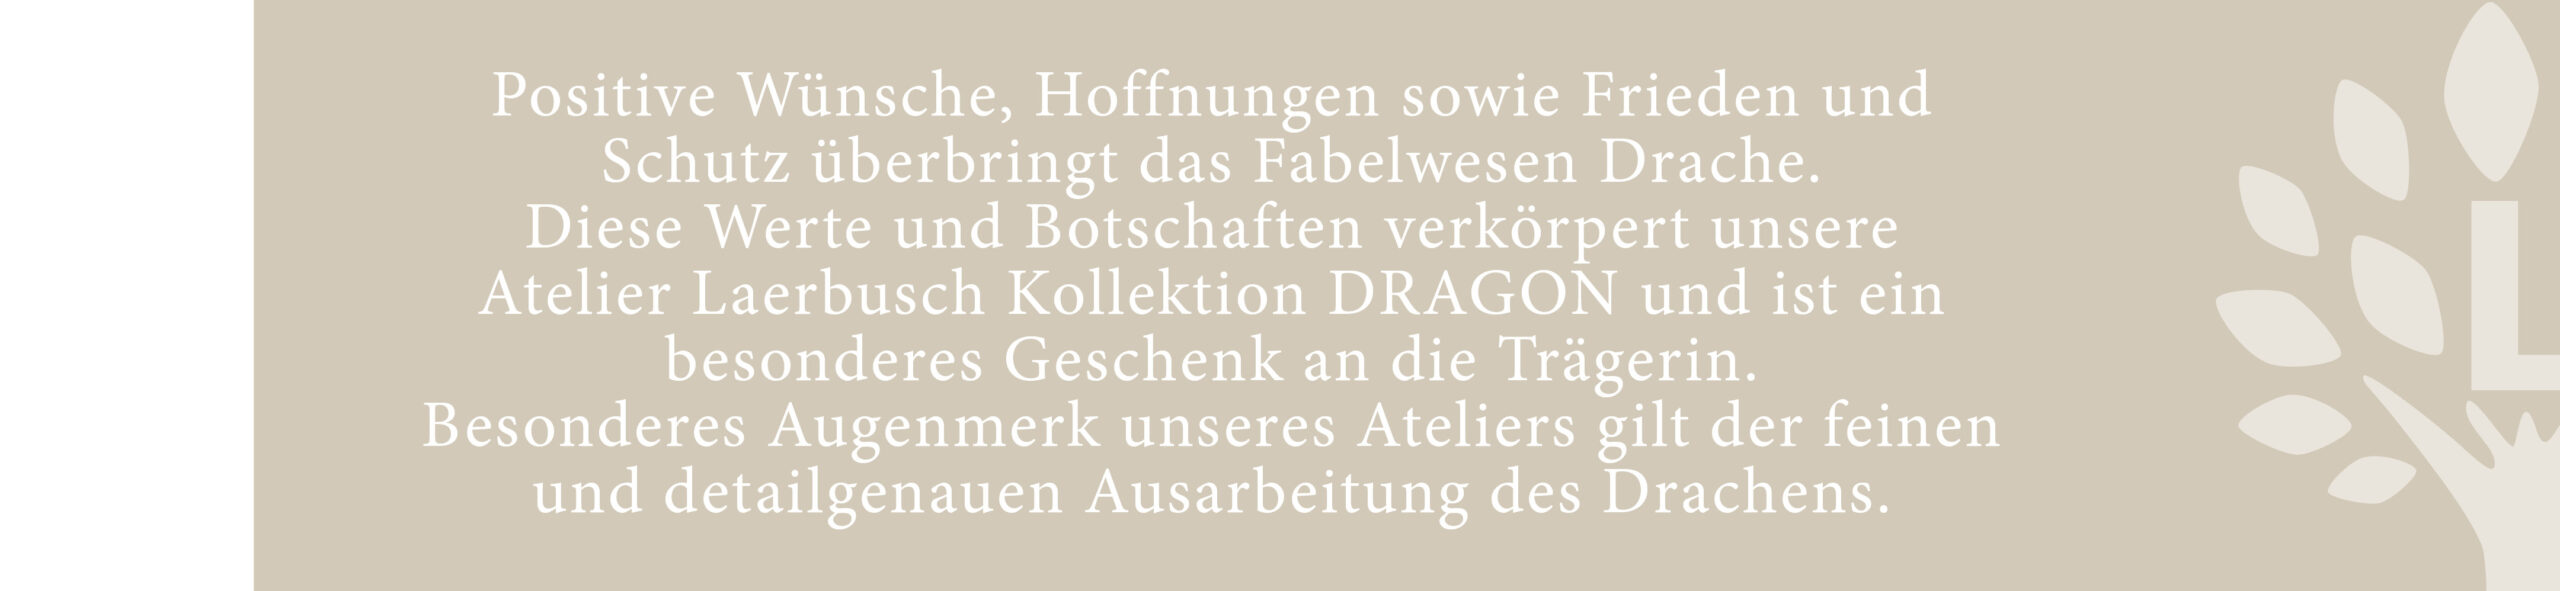 Dragon bei Juwelier Laerbusch in Mülheim an der Ruhr